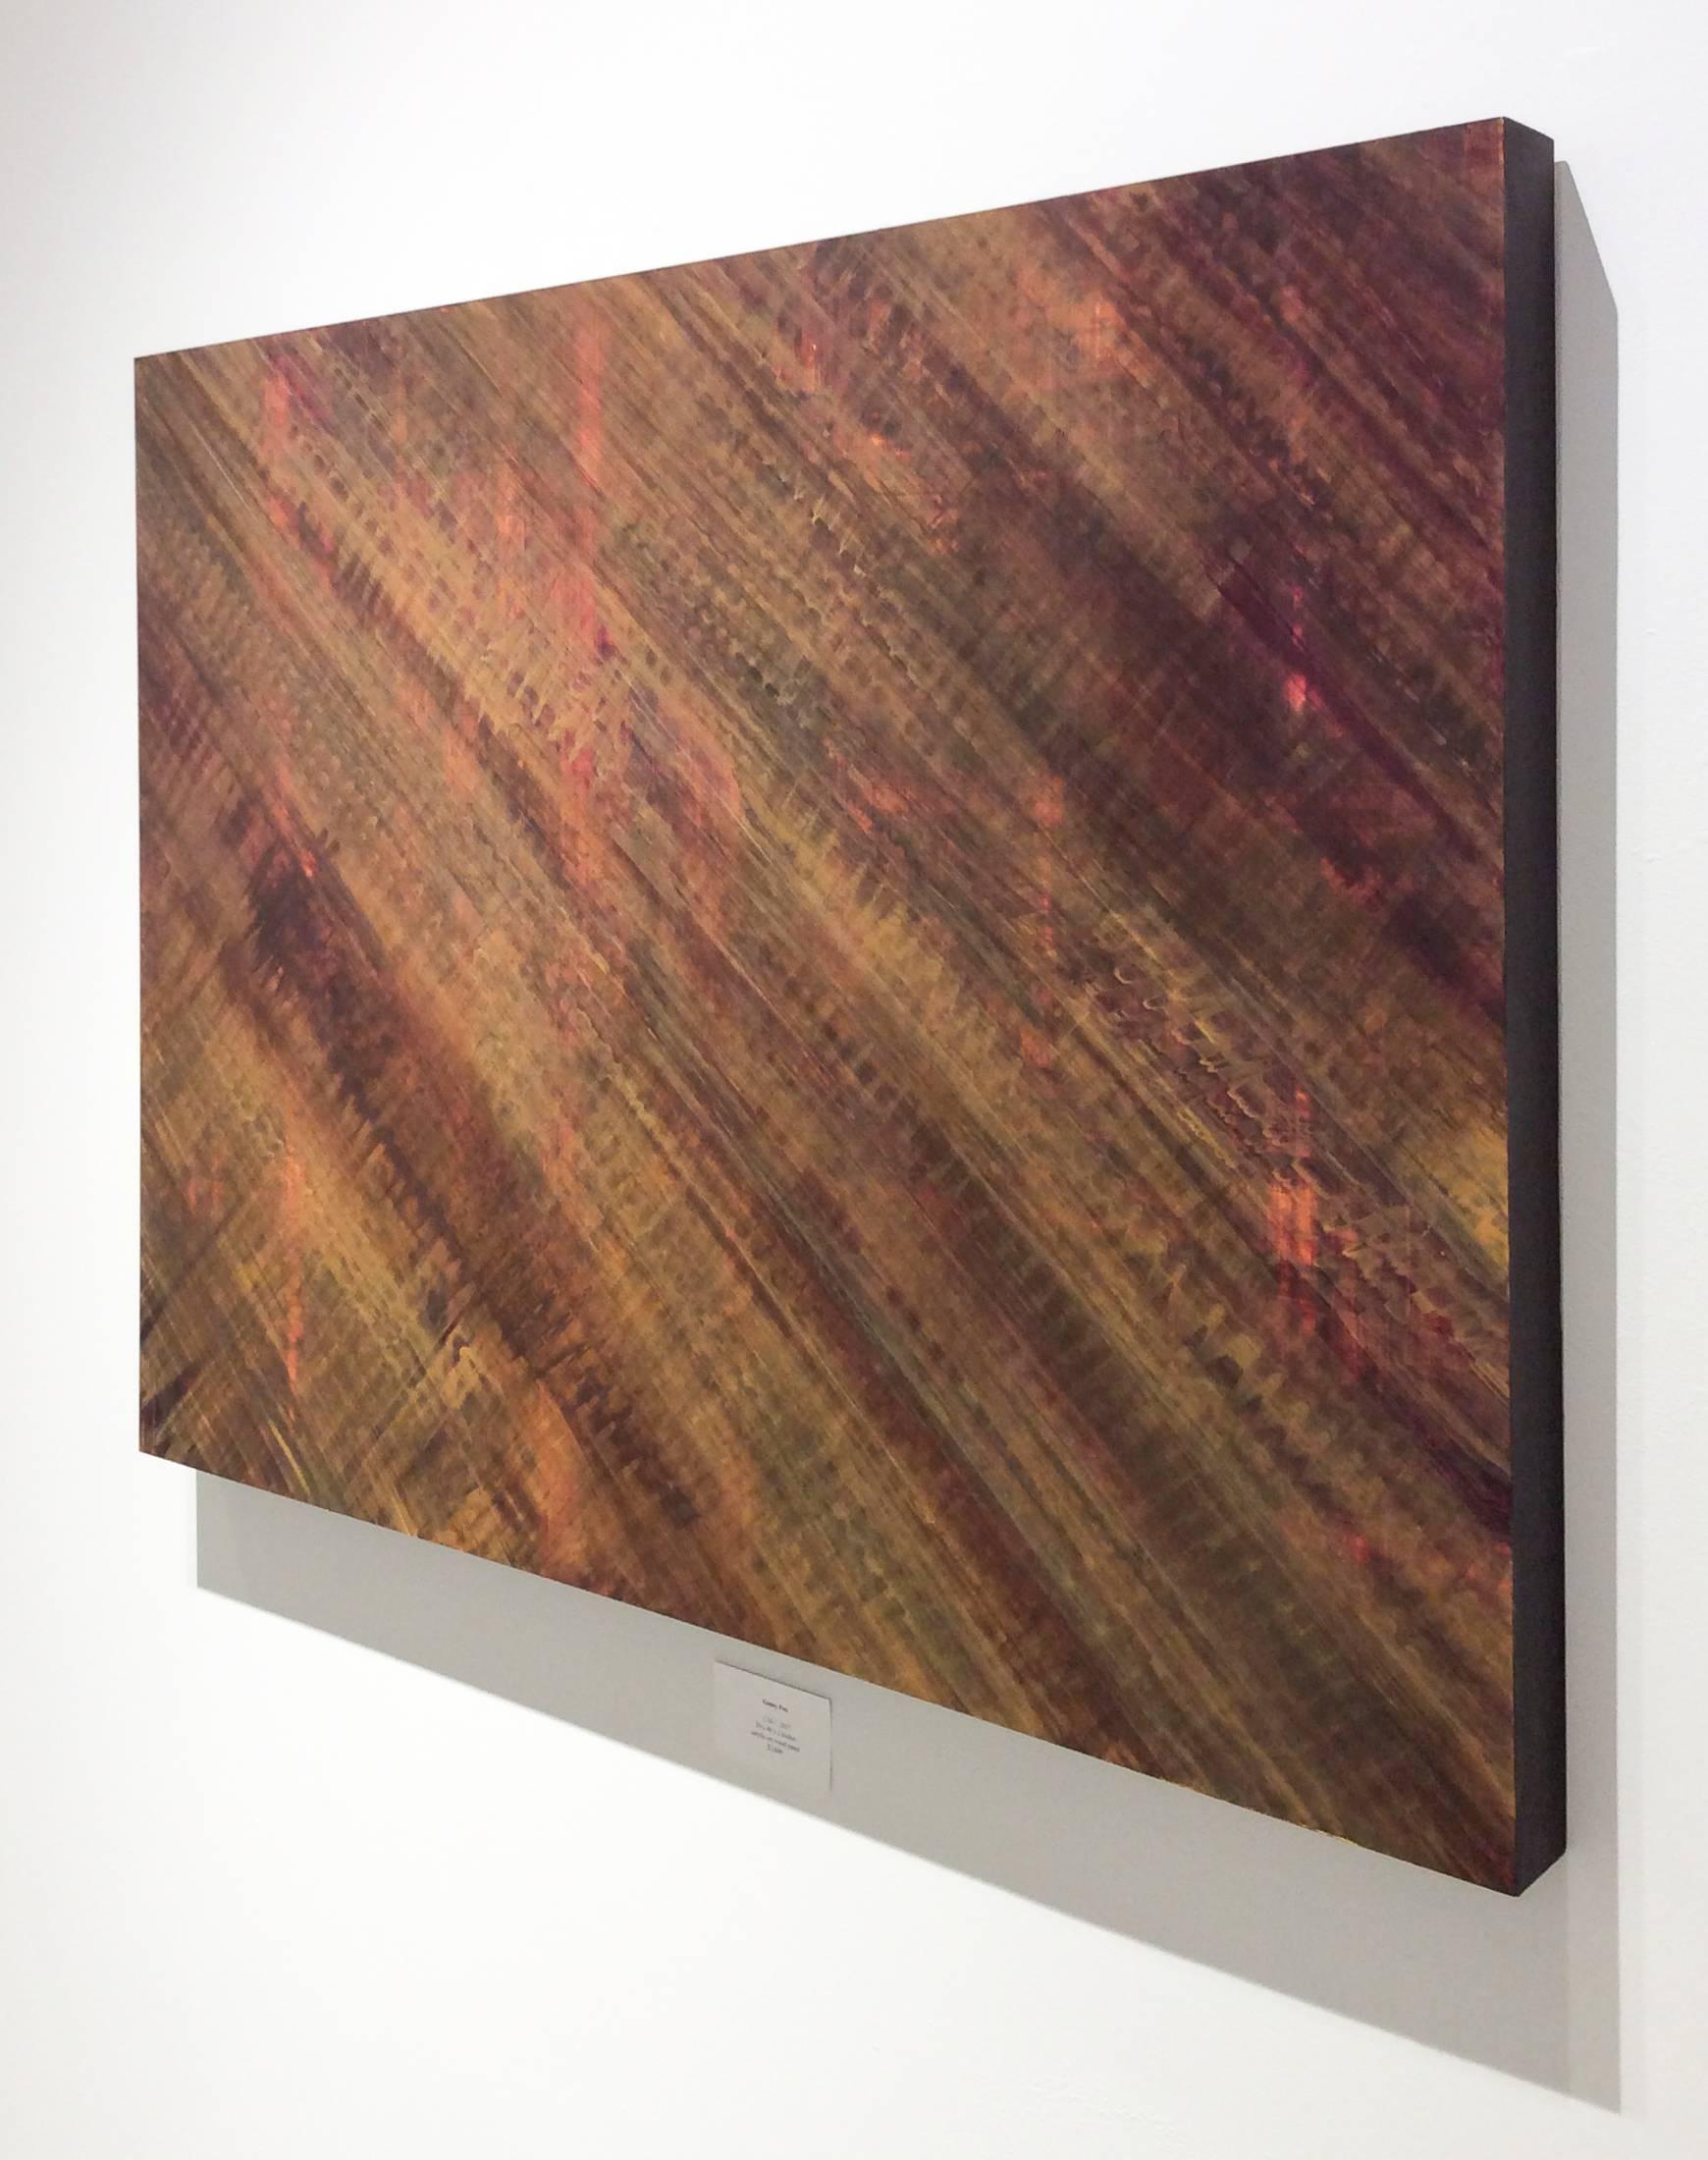 Acryl auf Holzplatte
30 x 40 x 2 Zoll

Diese minimalistische, ungegenständliche Malerei ist das Werk von Ginny Fox, deren Verfahren auf sich überlagernden Farbschlieren basiert. Fox arbeitet mit Lappen statt mit Pinseln und bewegt sich auf